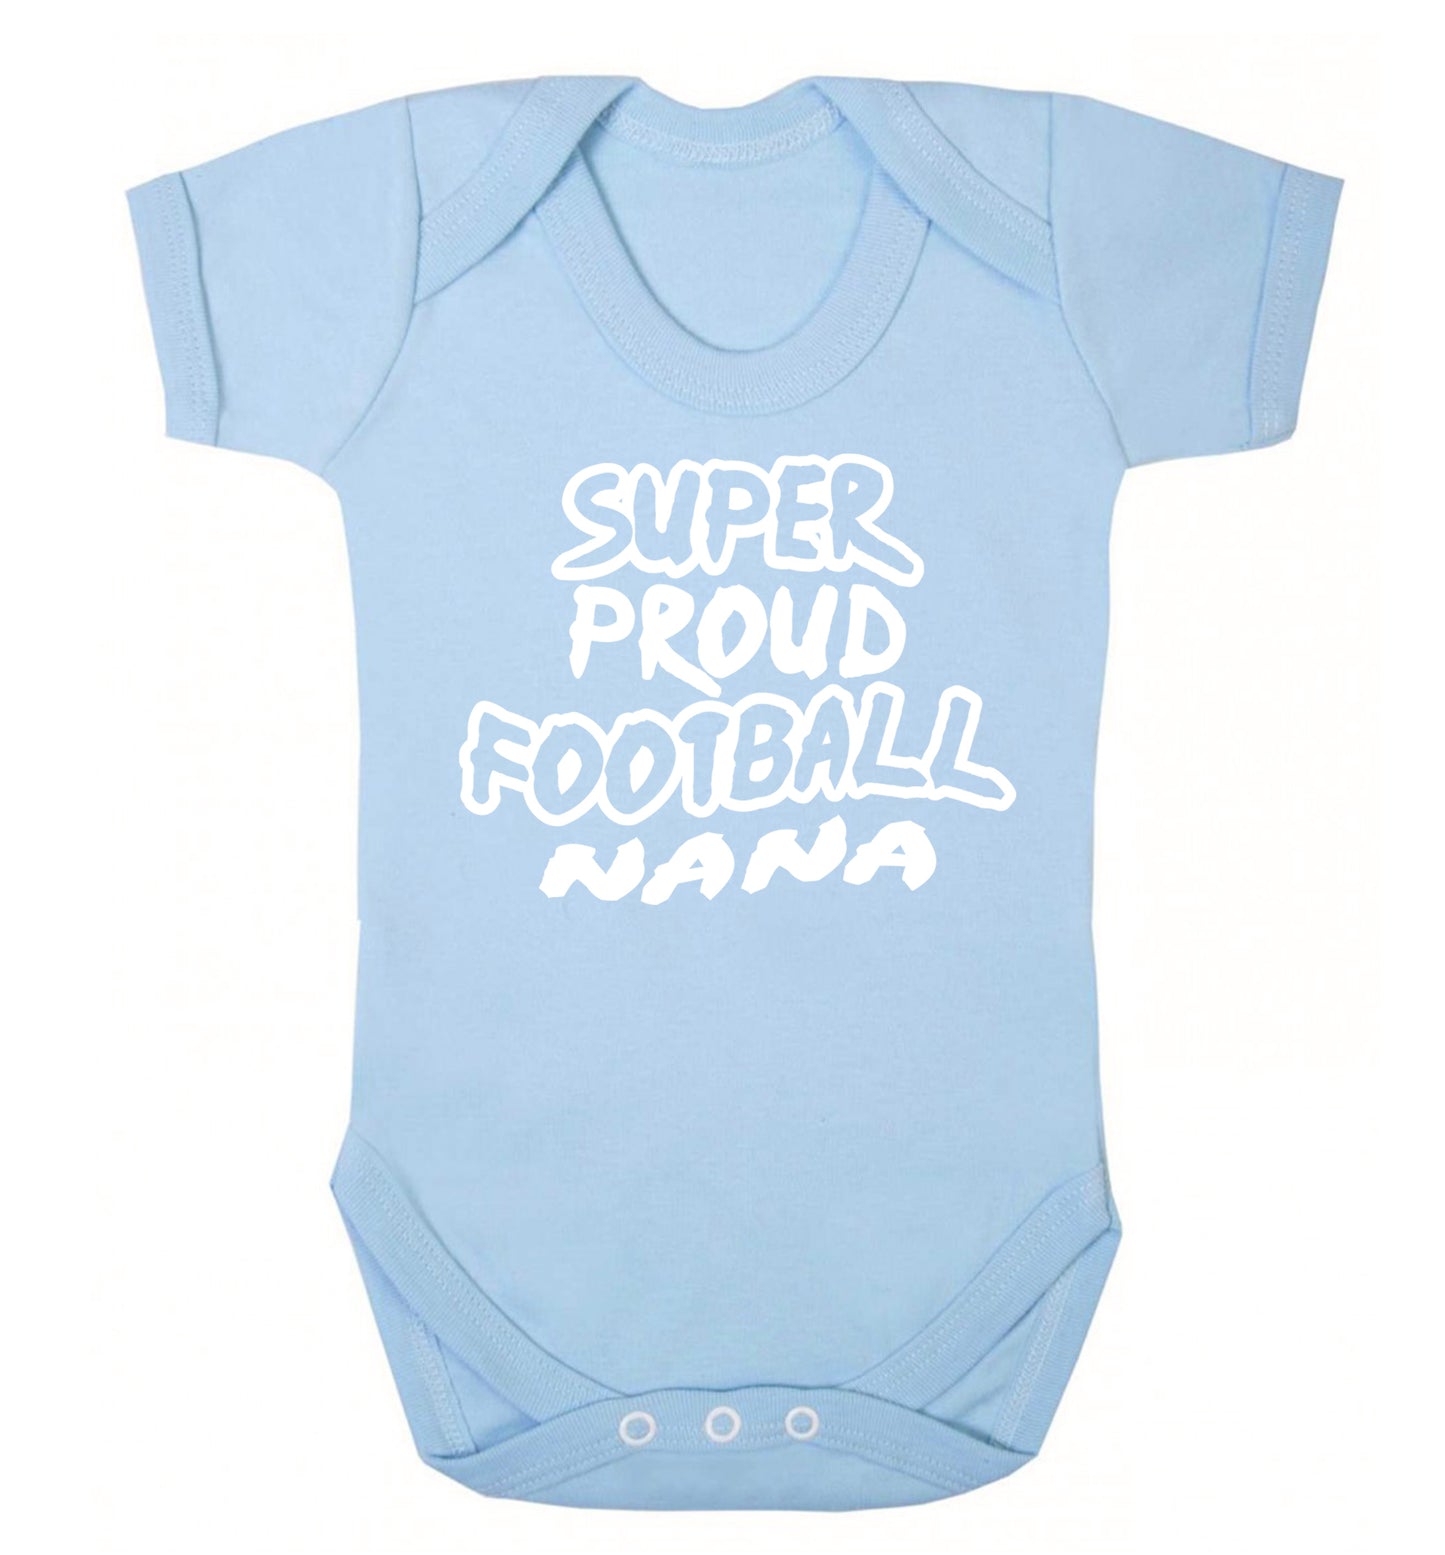 Super proud football nana Baby Vest pale blue 18-24 months